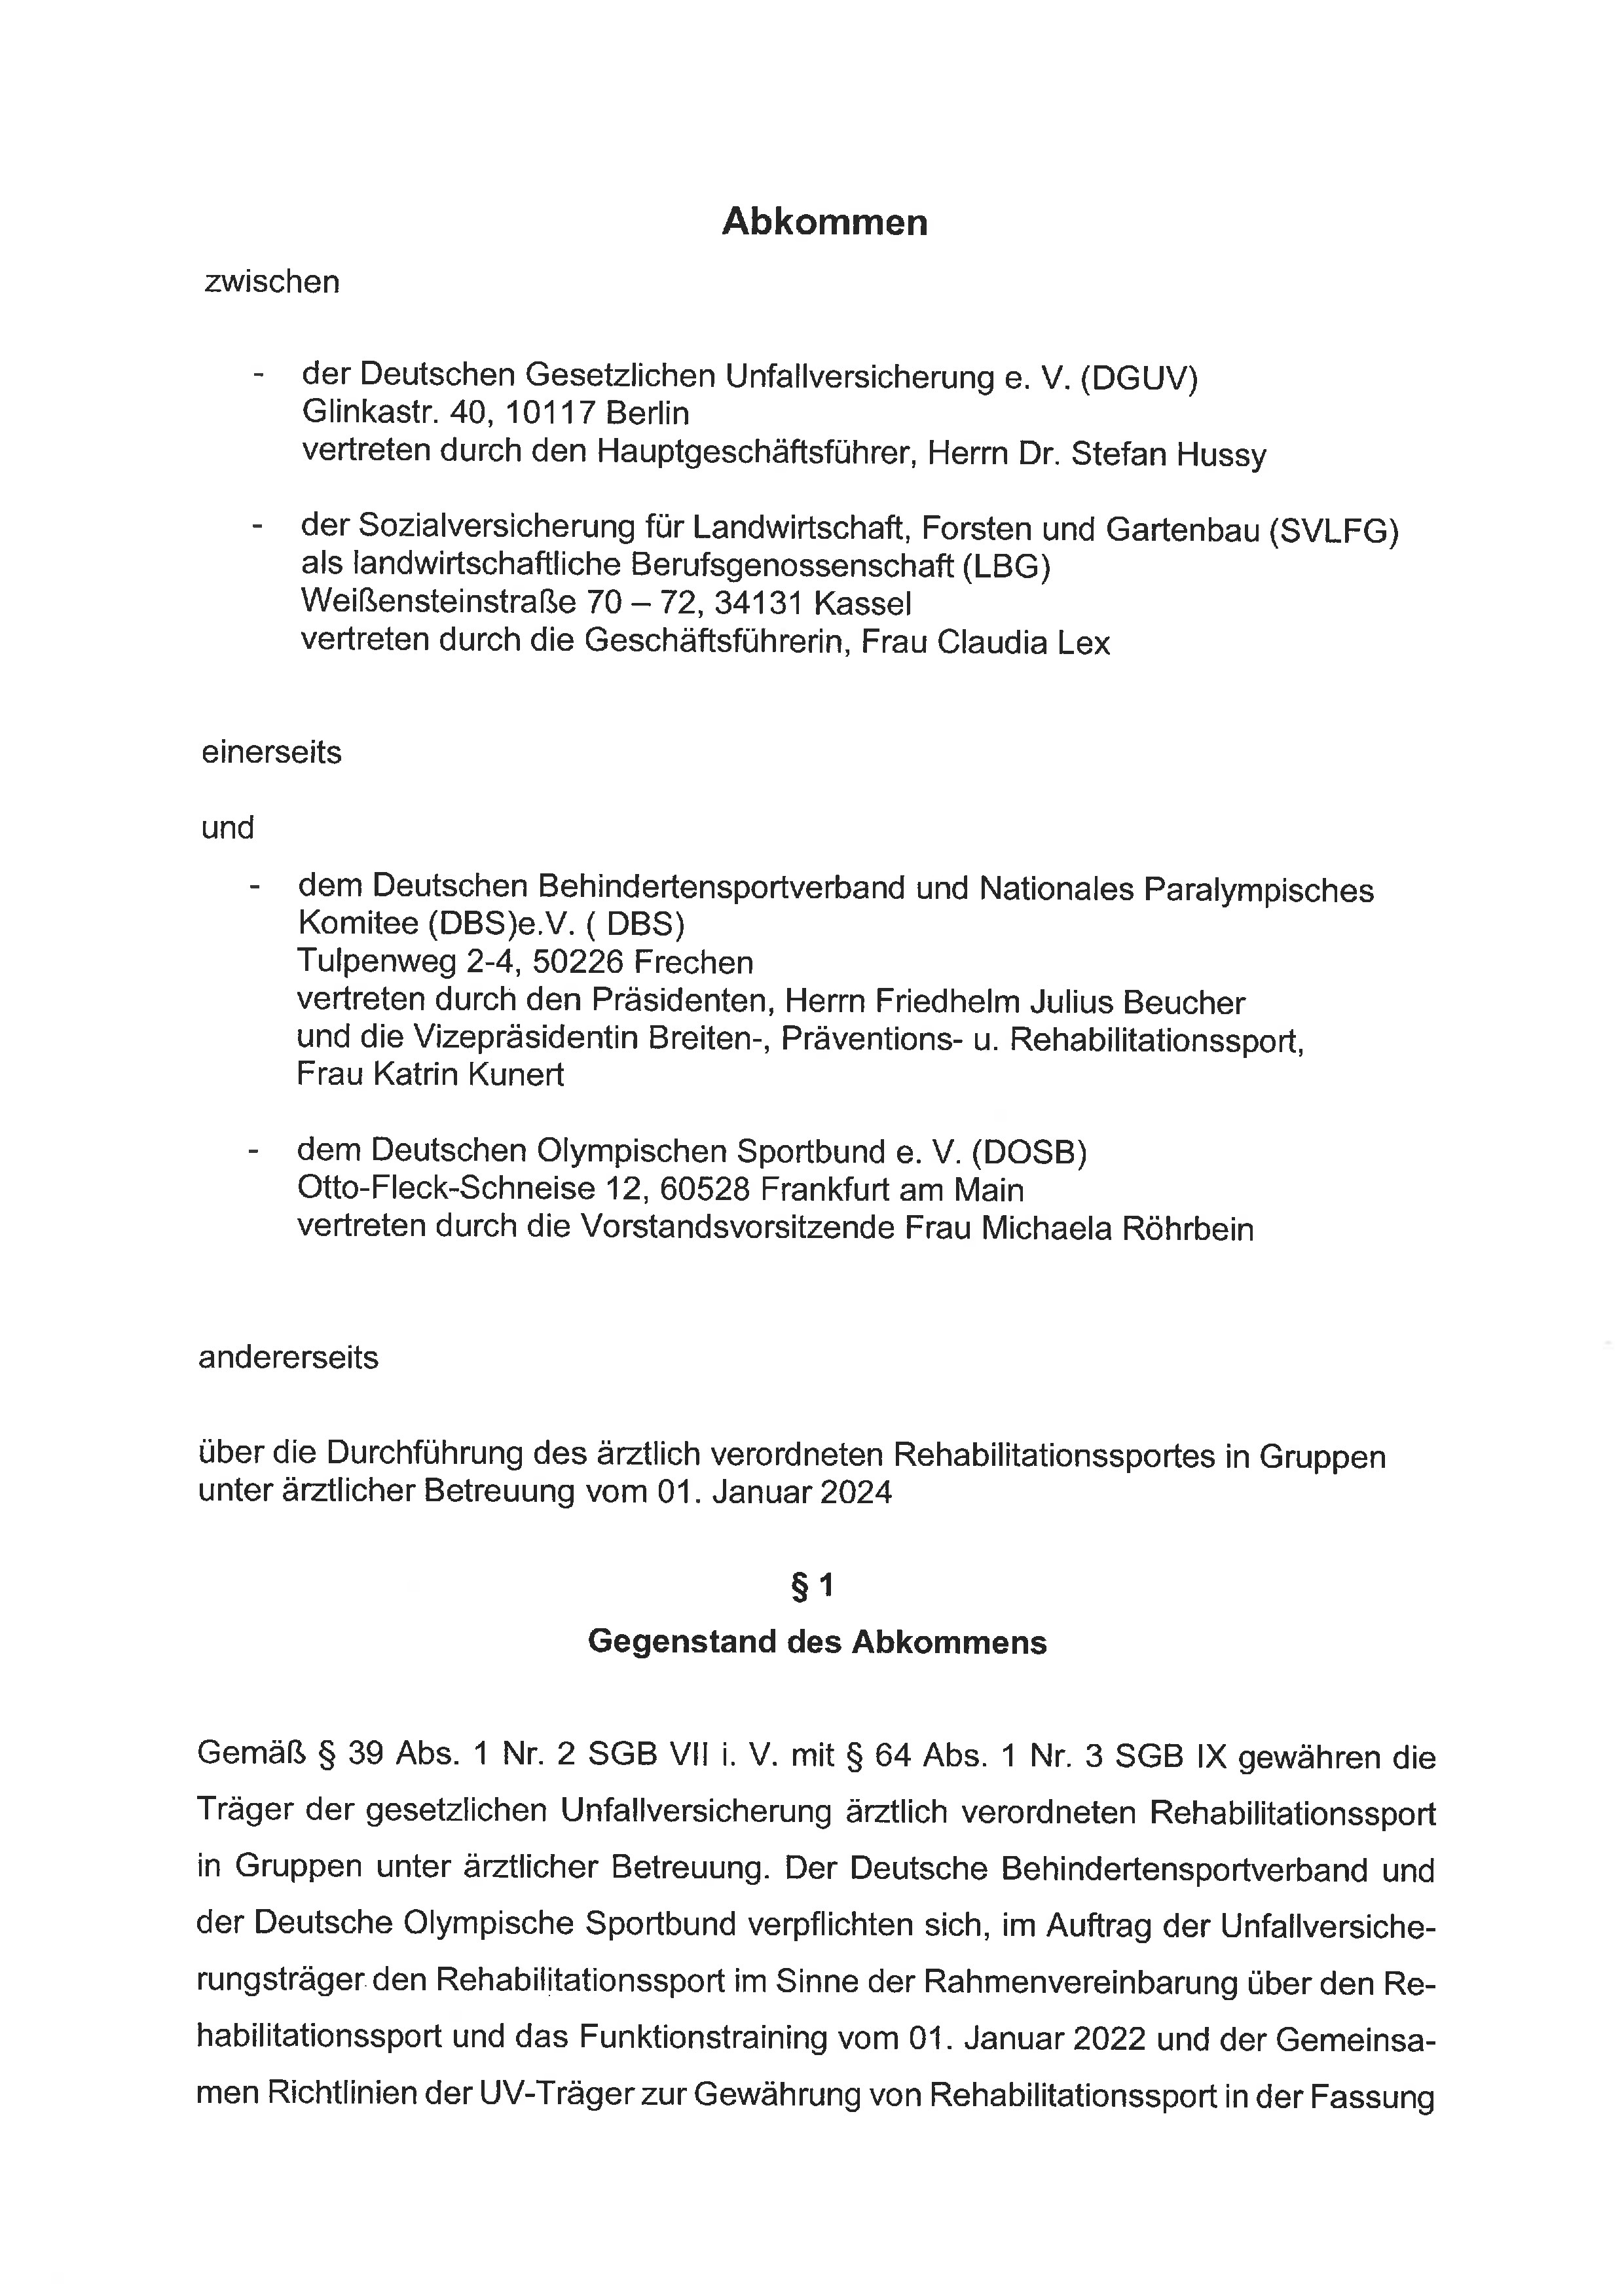 Erste Seite der PDF-Datei: Abkommen Rehasport DBS-DOSB-DGUV-SVLFG 2024